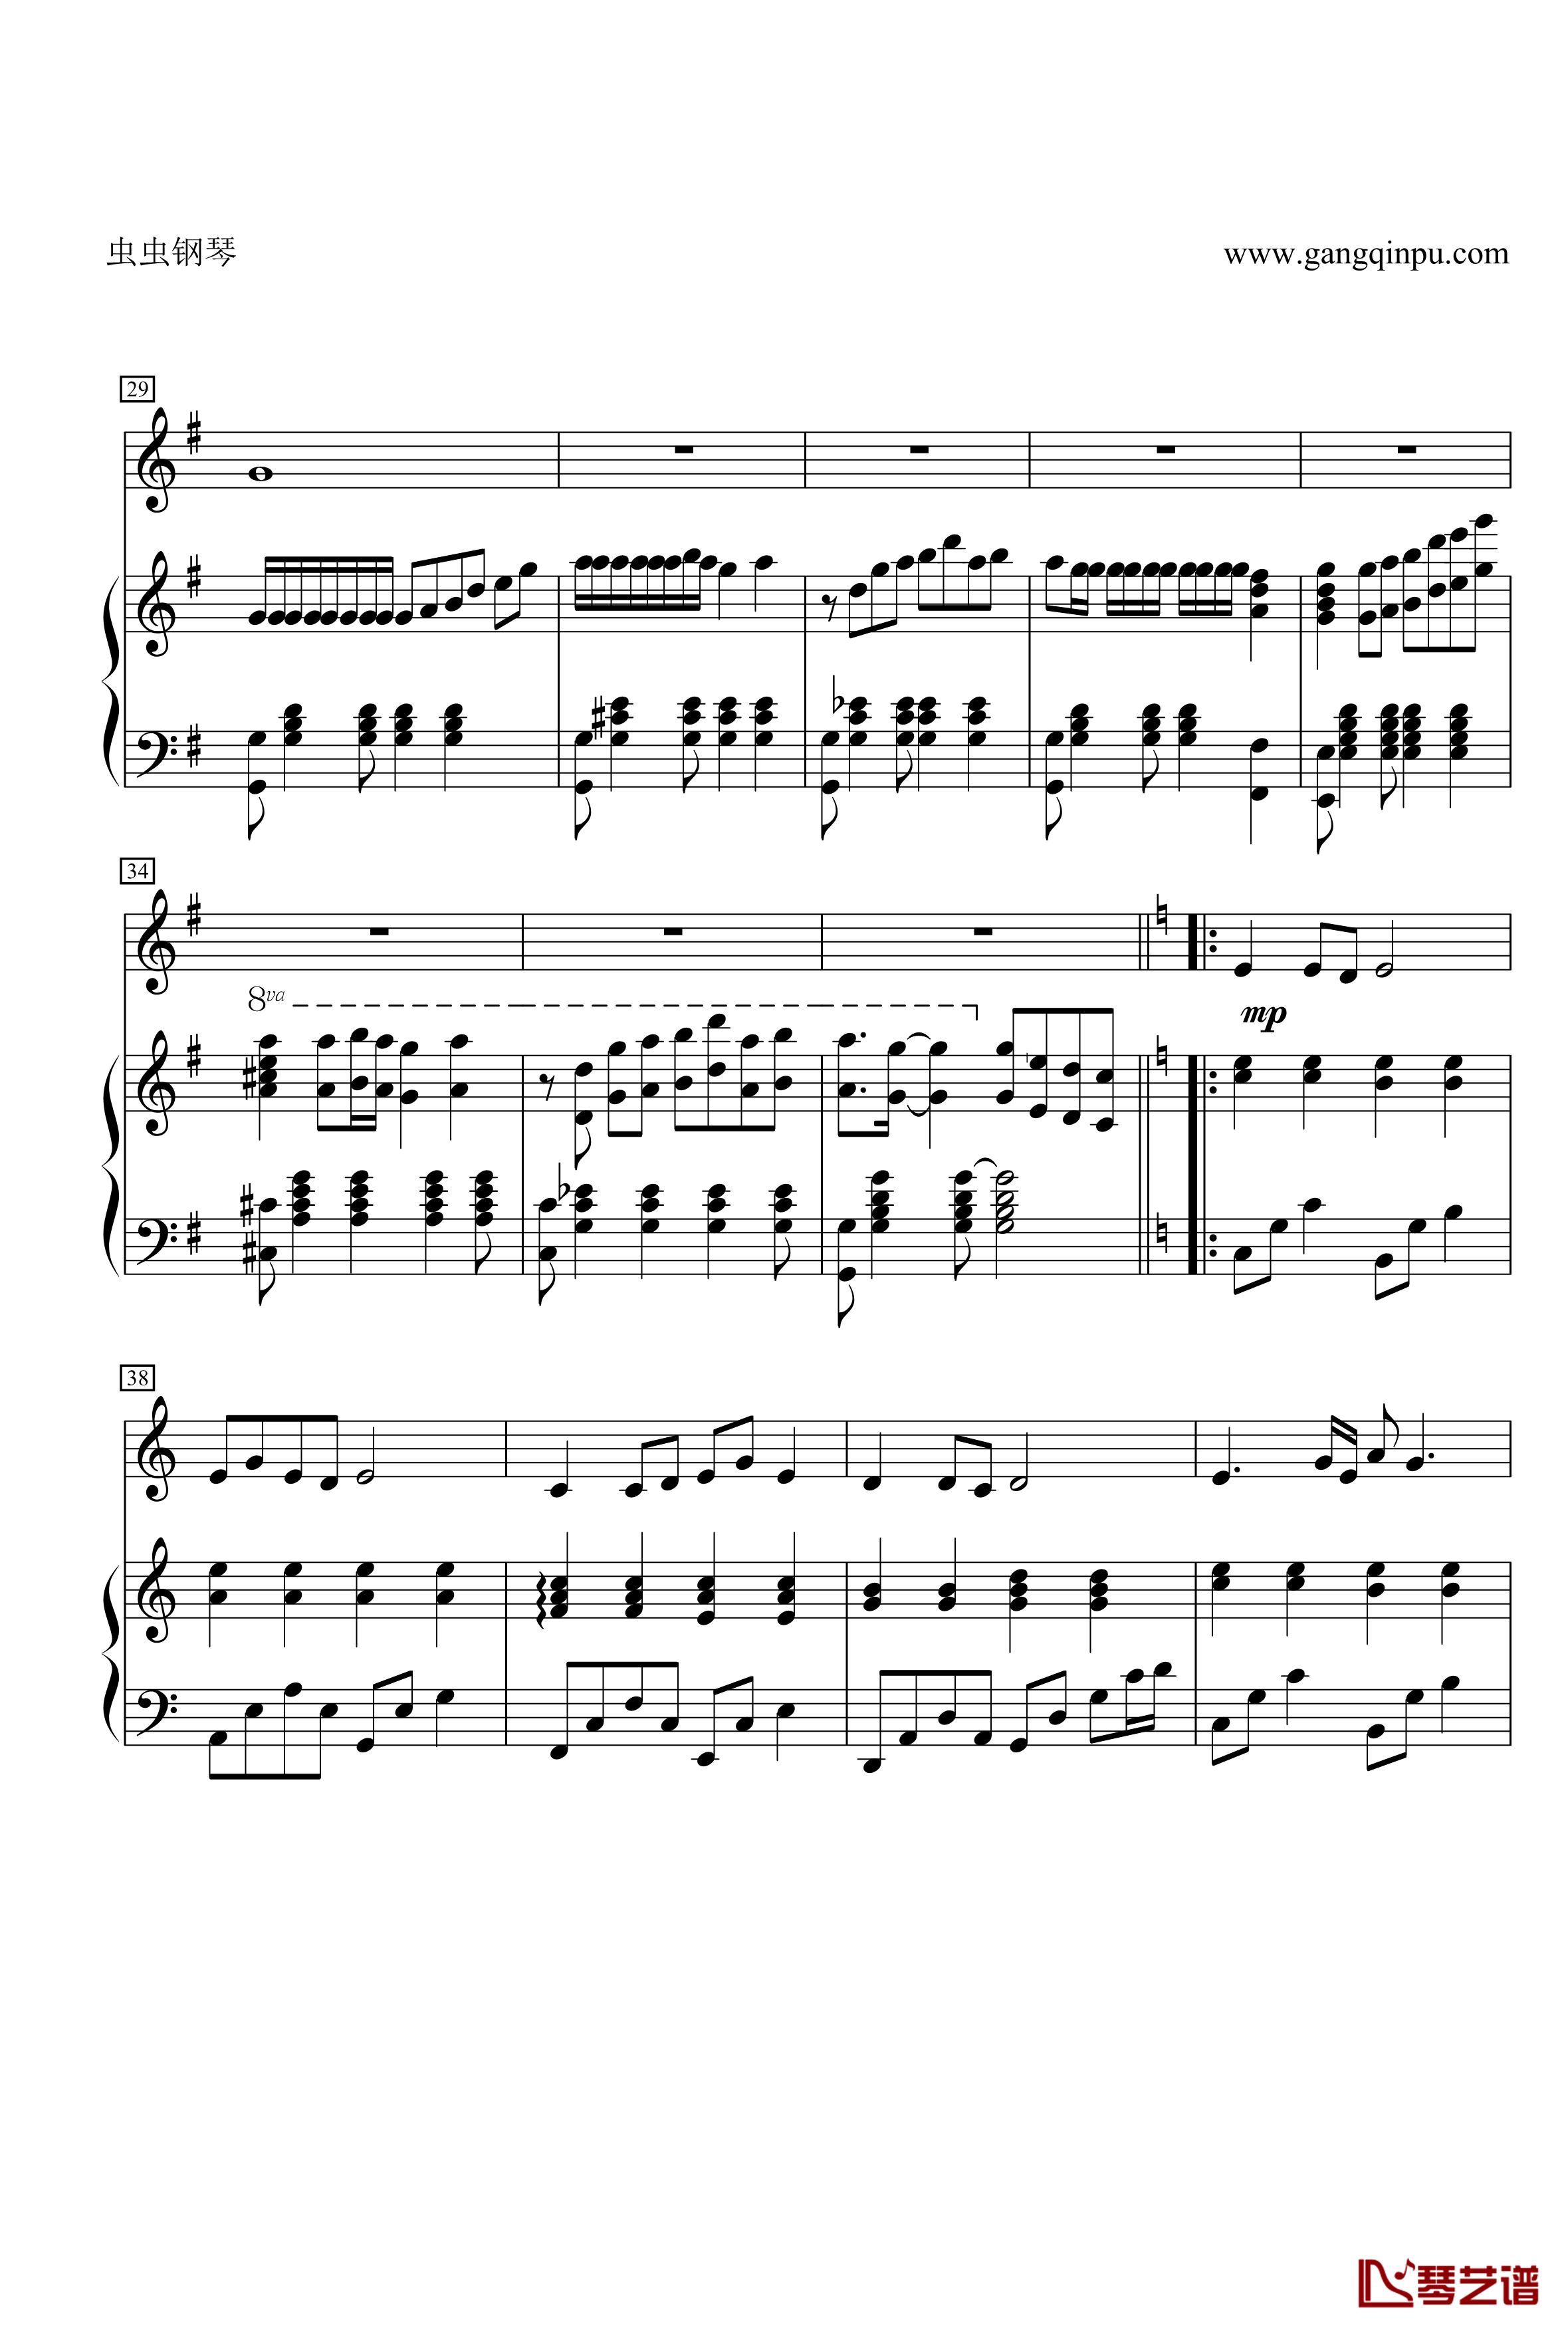 菊花台钢琴谱-二胡对话大提琴 钢琴 总谱-周杰伦